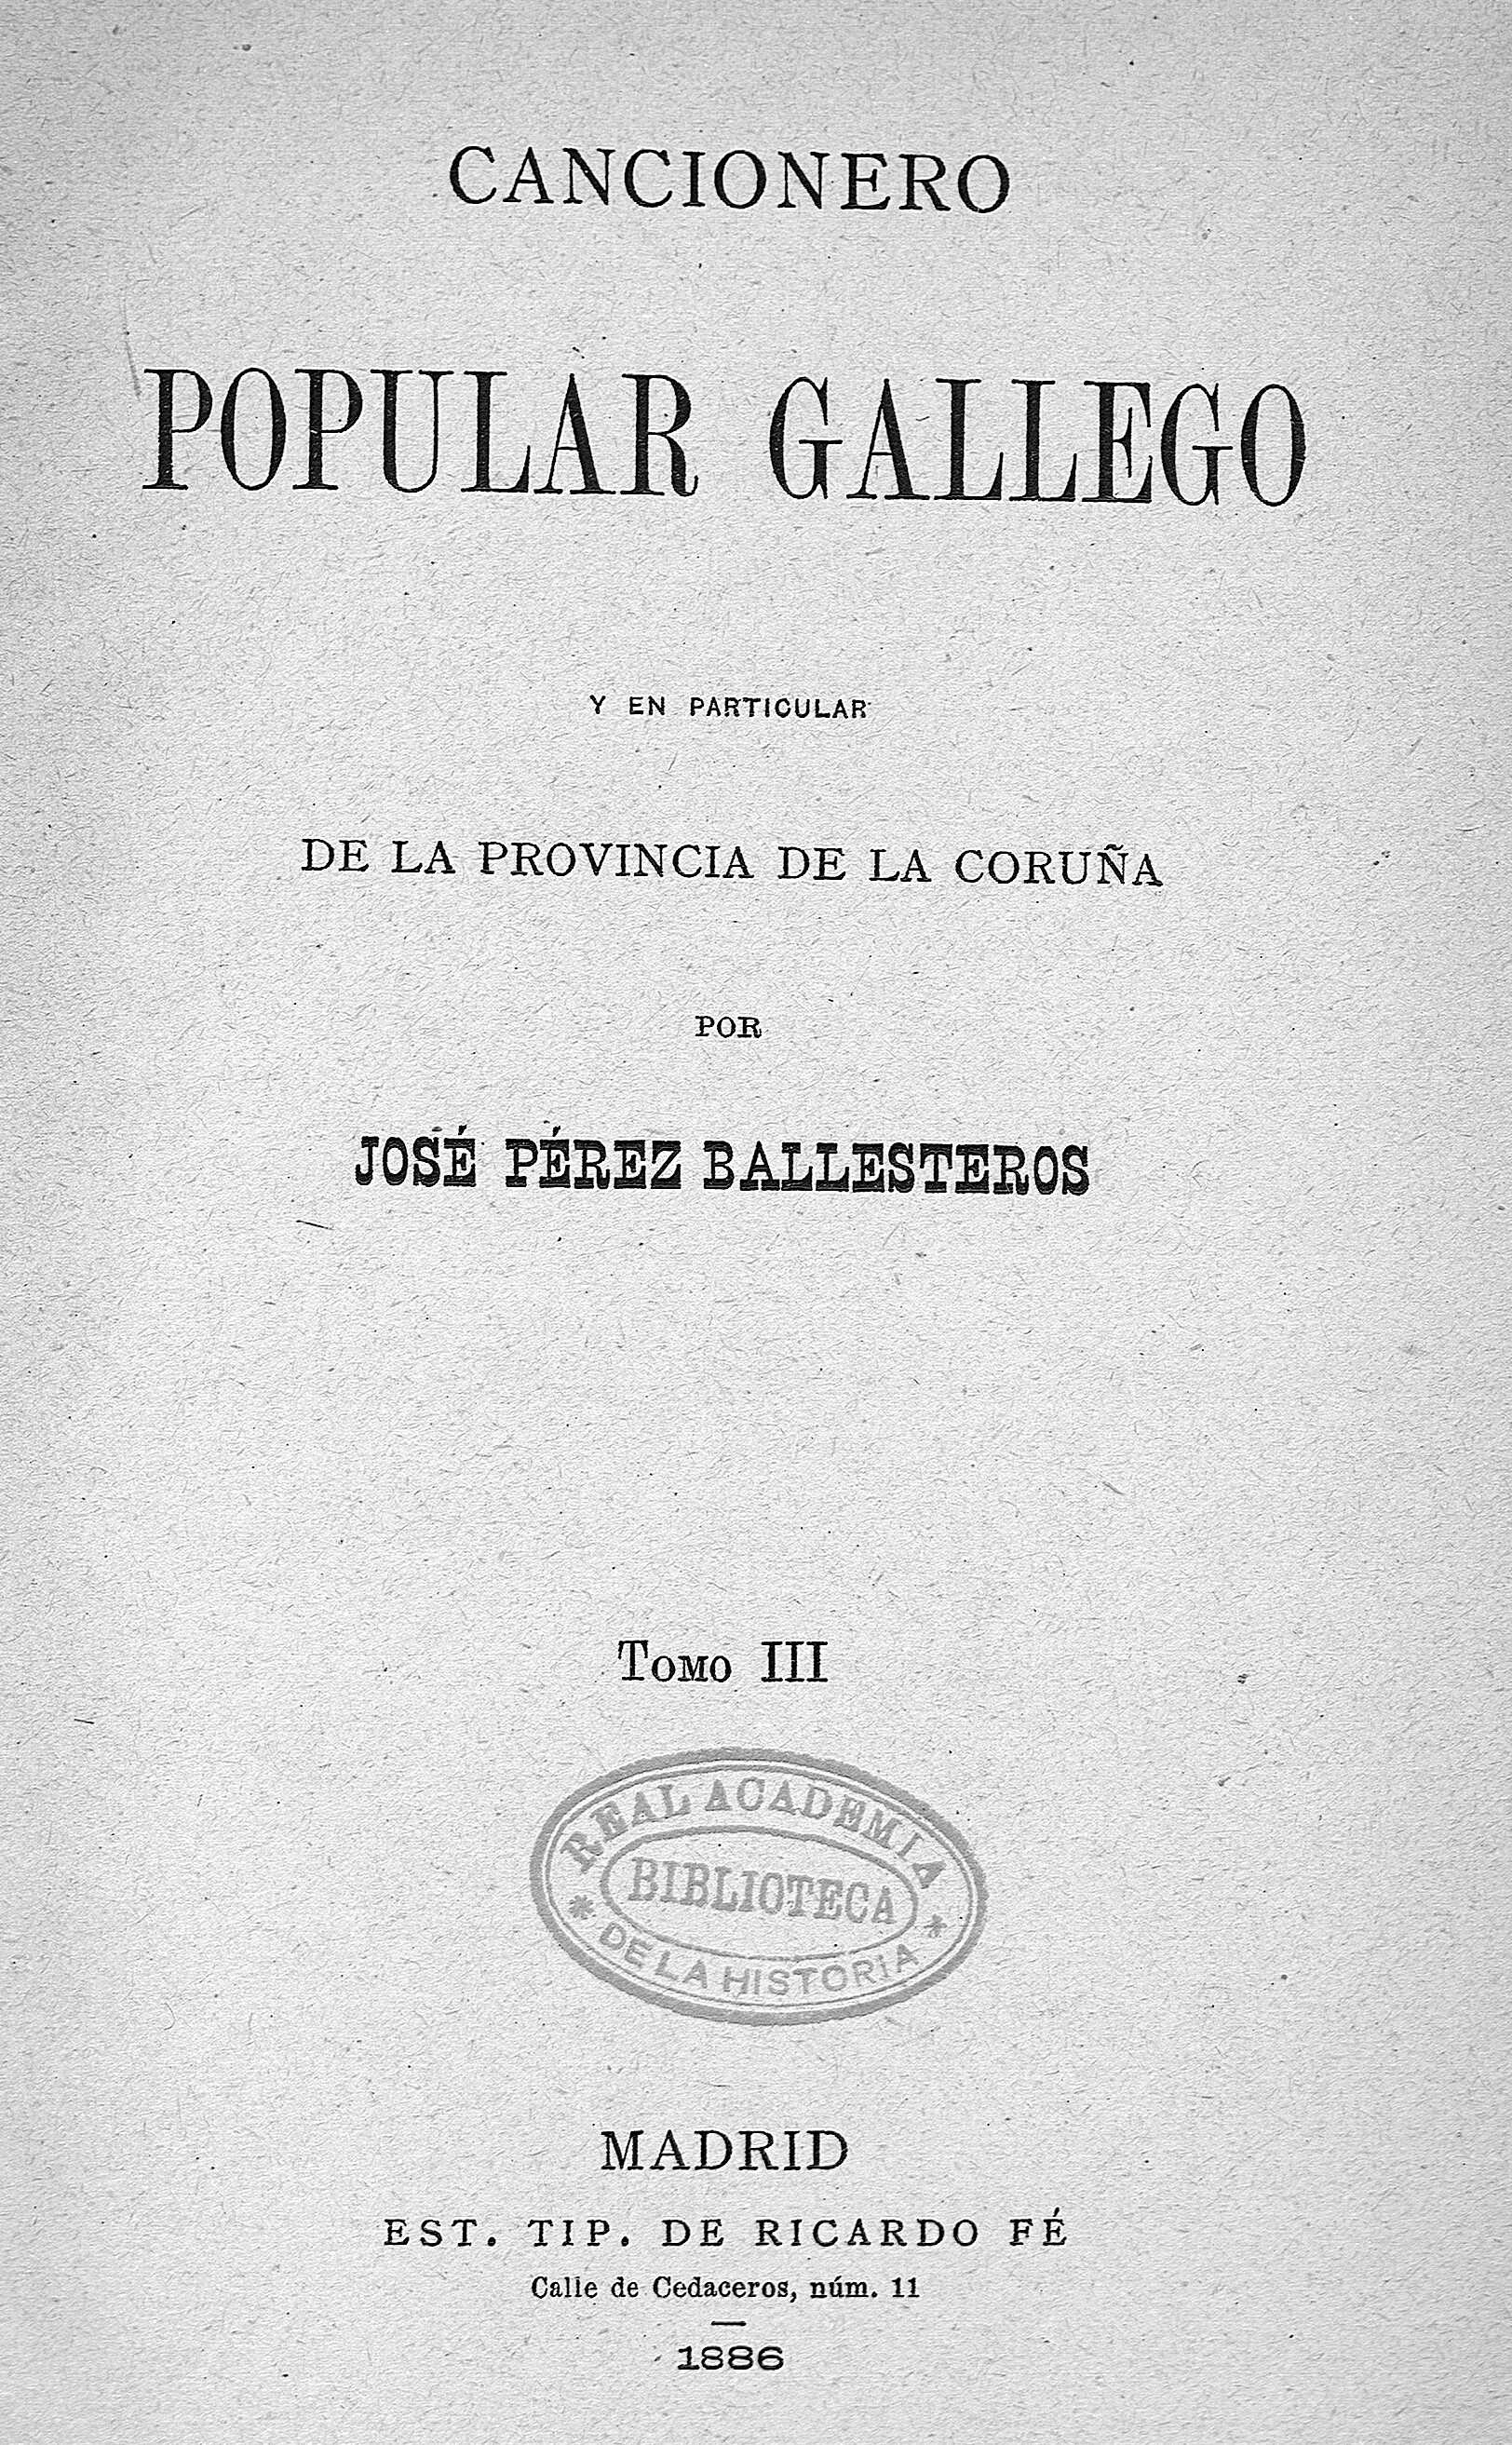 Cancionero popular gallego. Tomo III